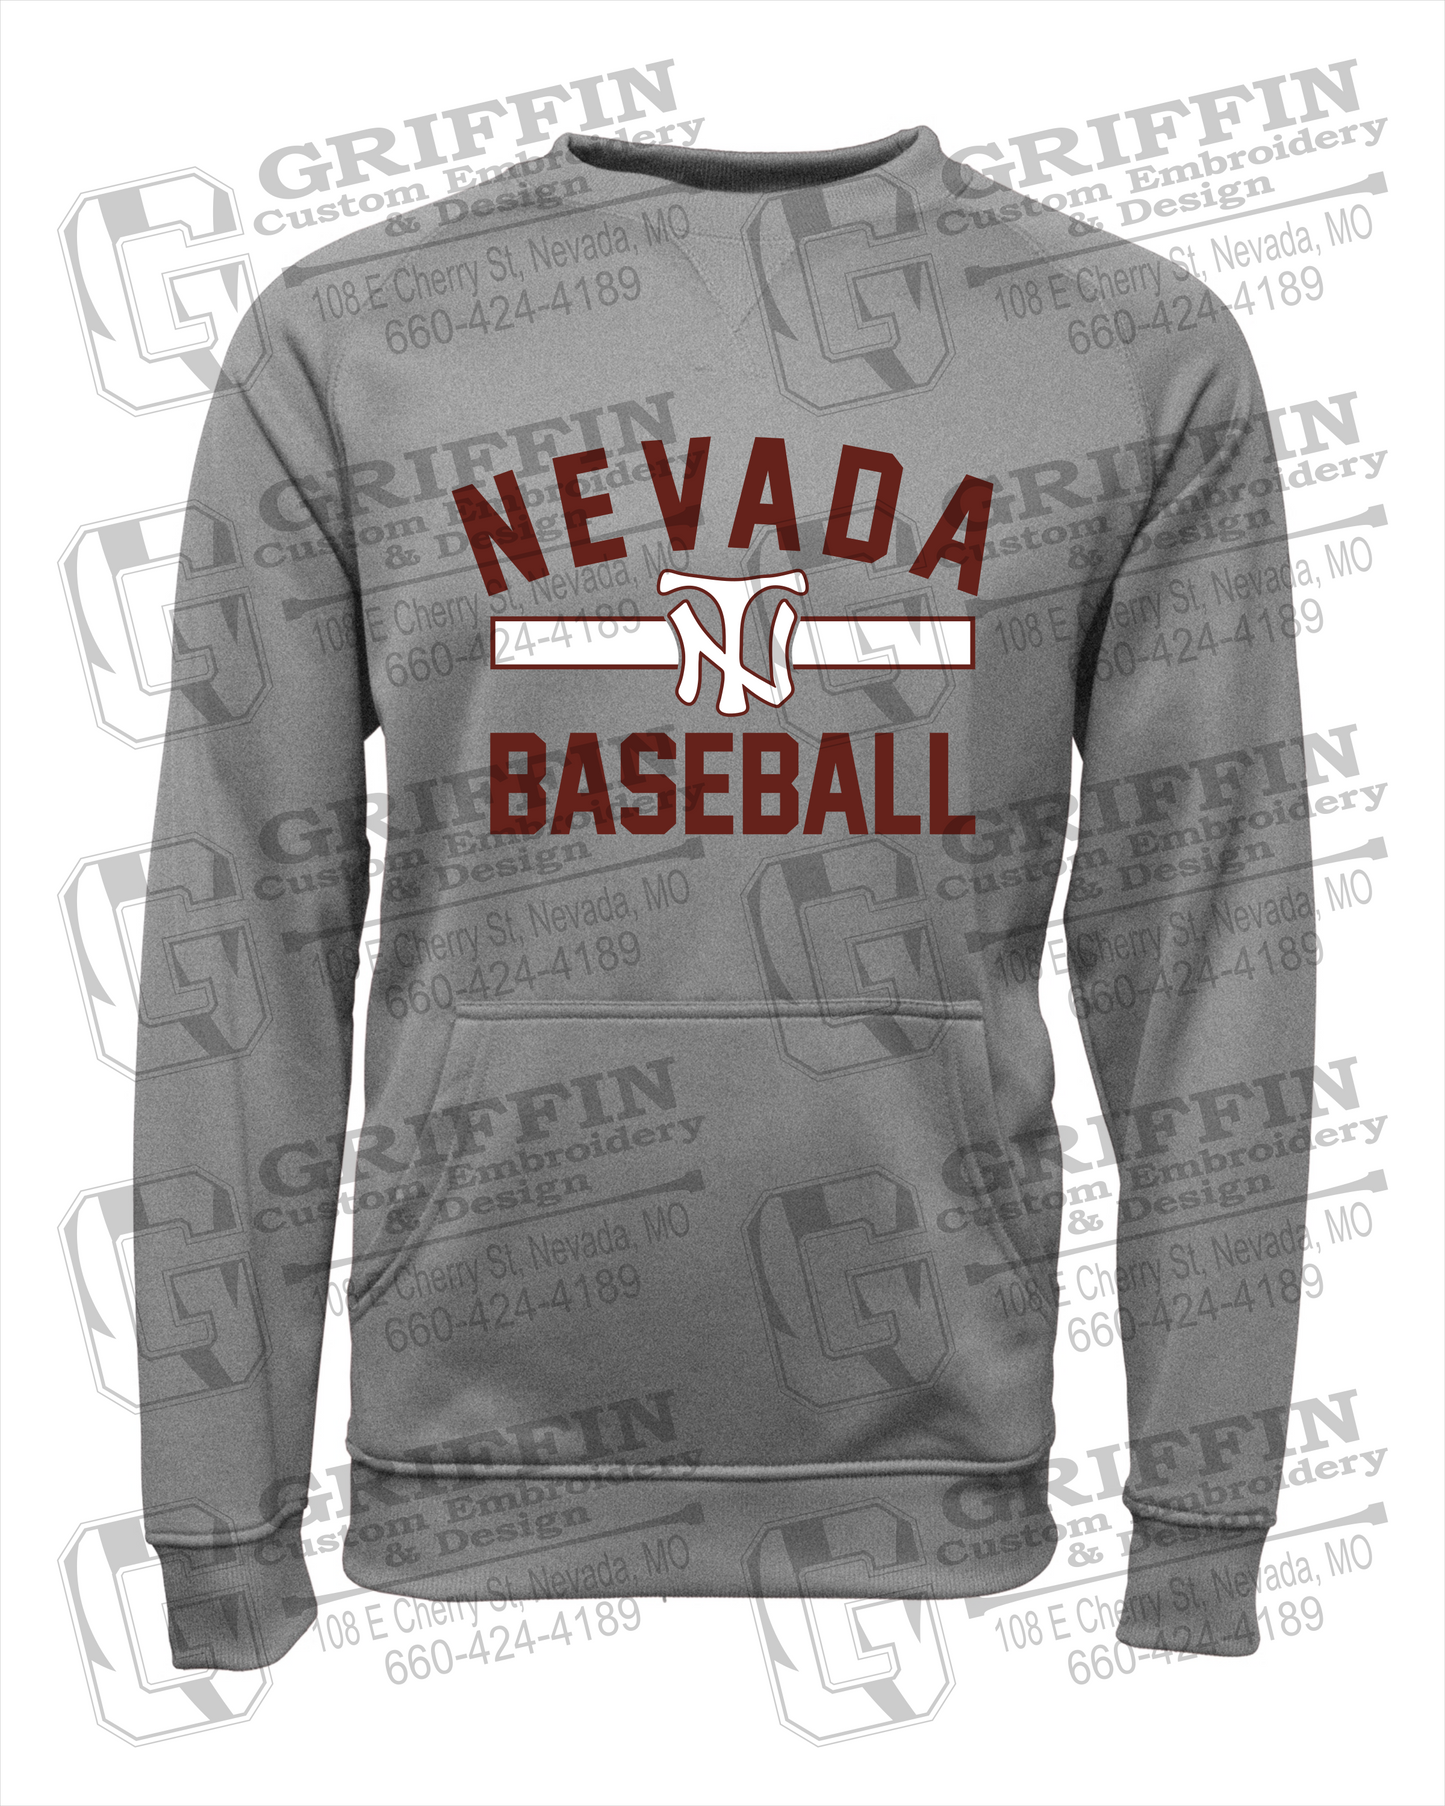 Nevada Tigers 24-Z Sweatshirt - Baseball